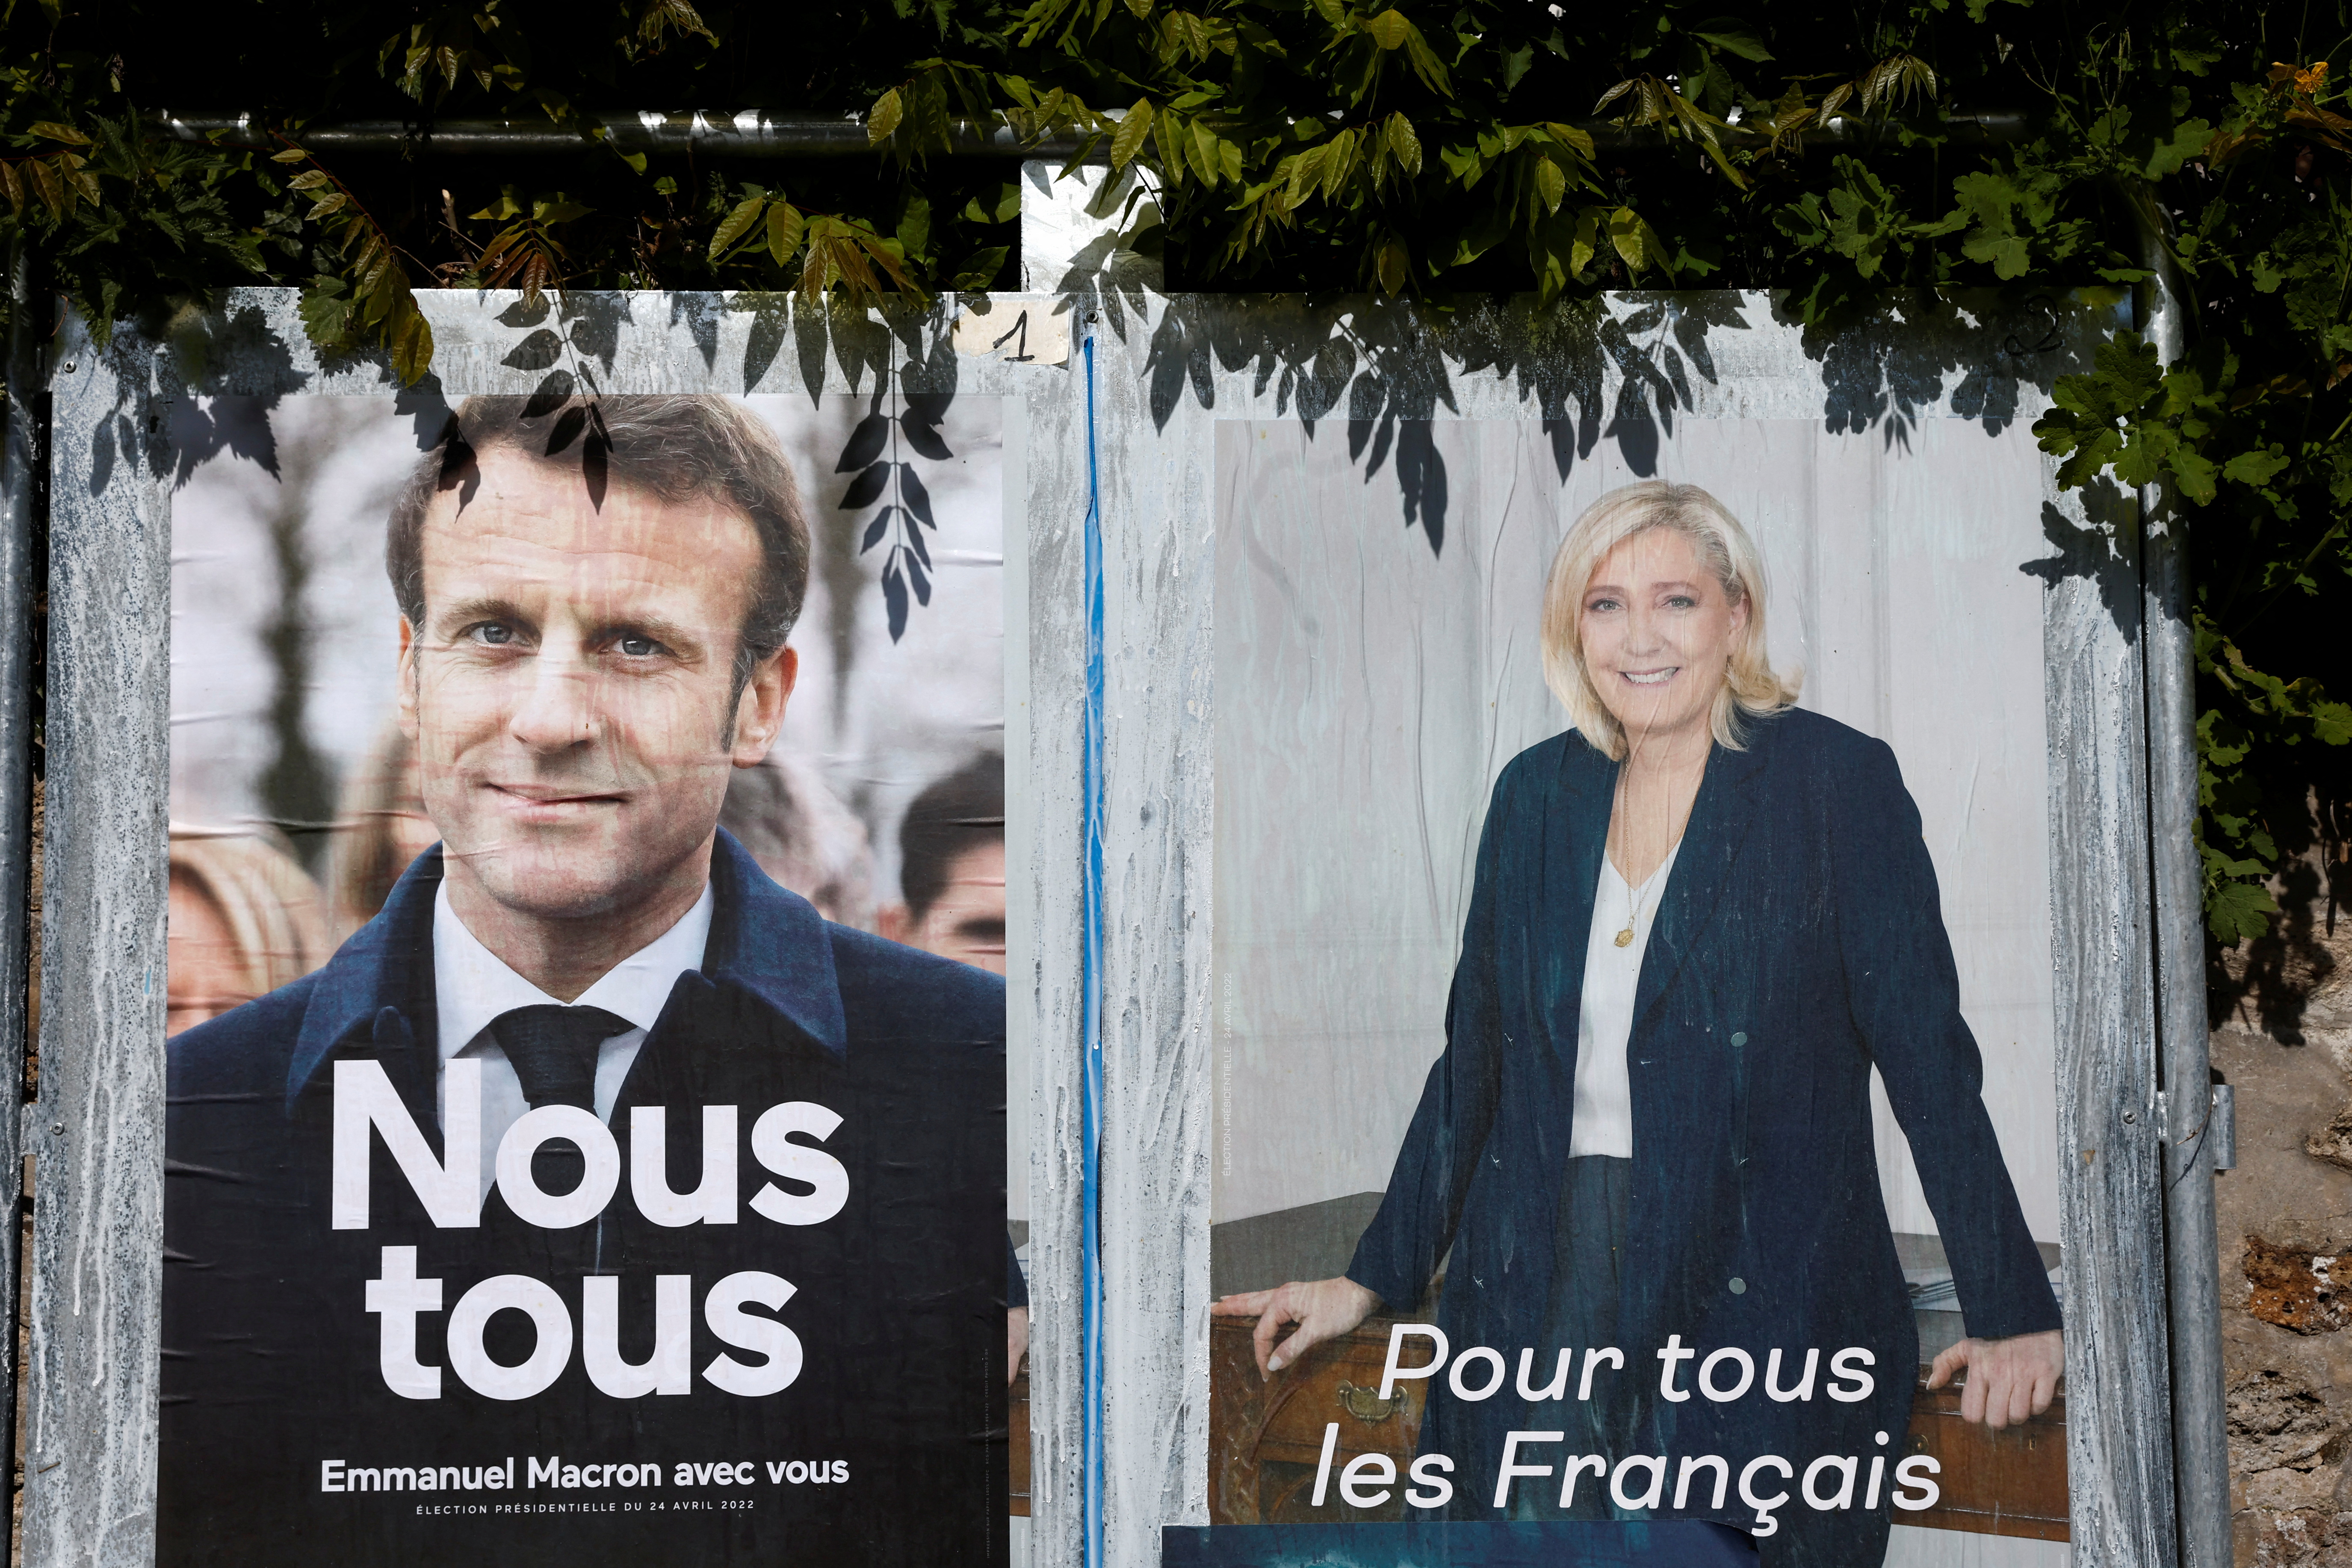 Los centros electorales en las grandes ciudades, como París, permanecerán abiertos hasta las 20 horas de este domingo. Los resultados se esperan para el final de la jornada.